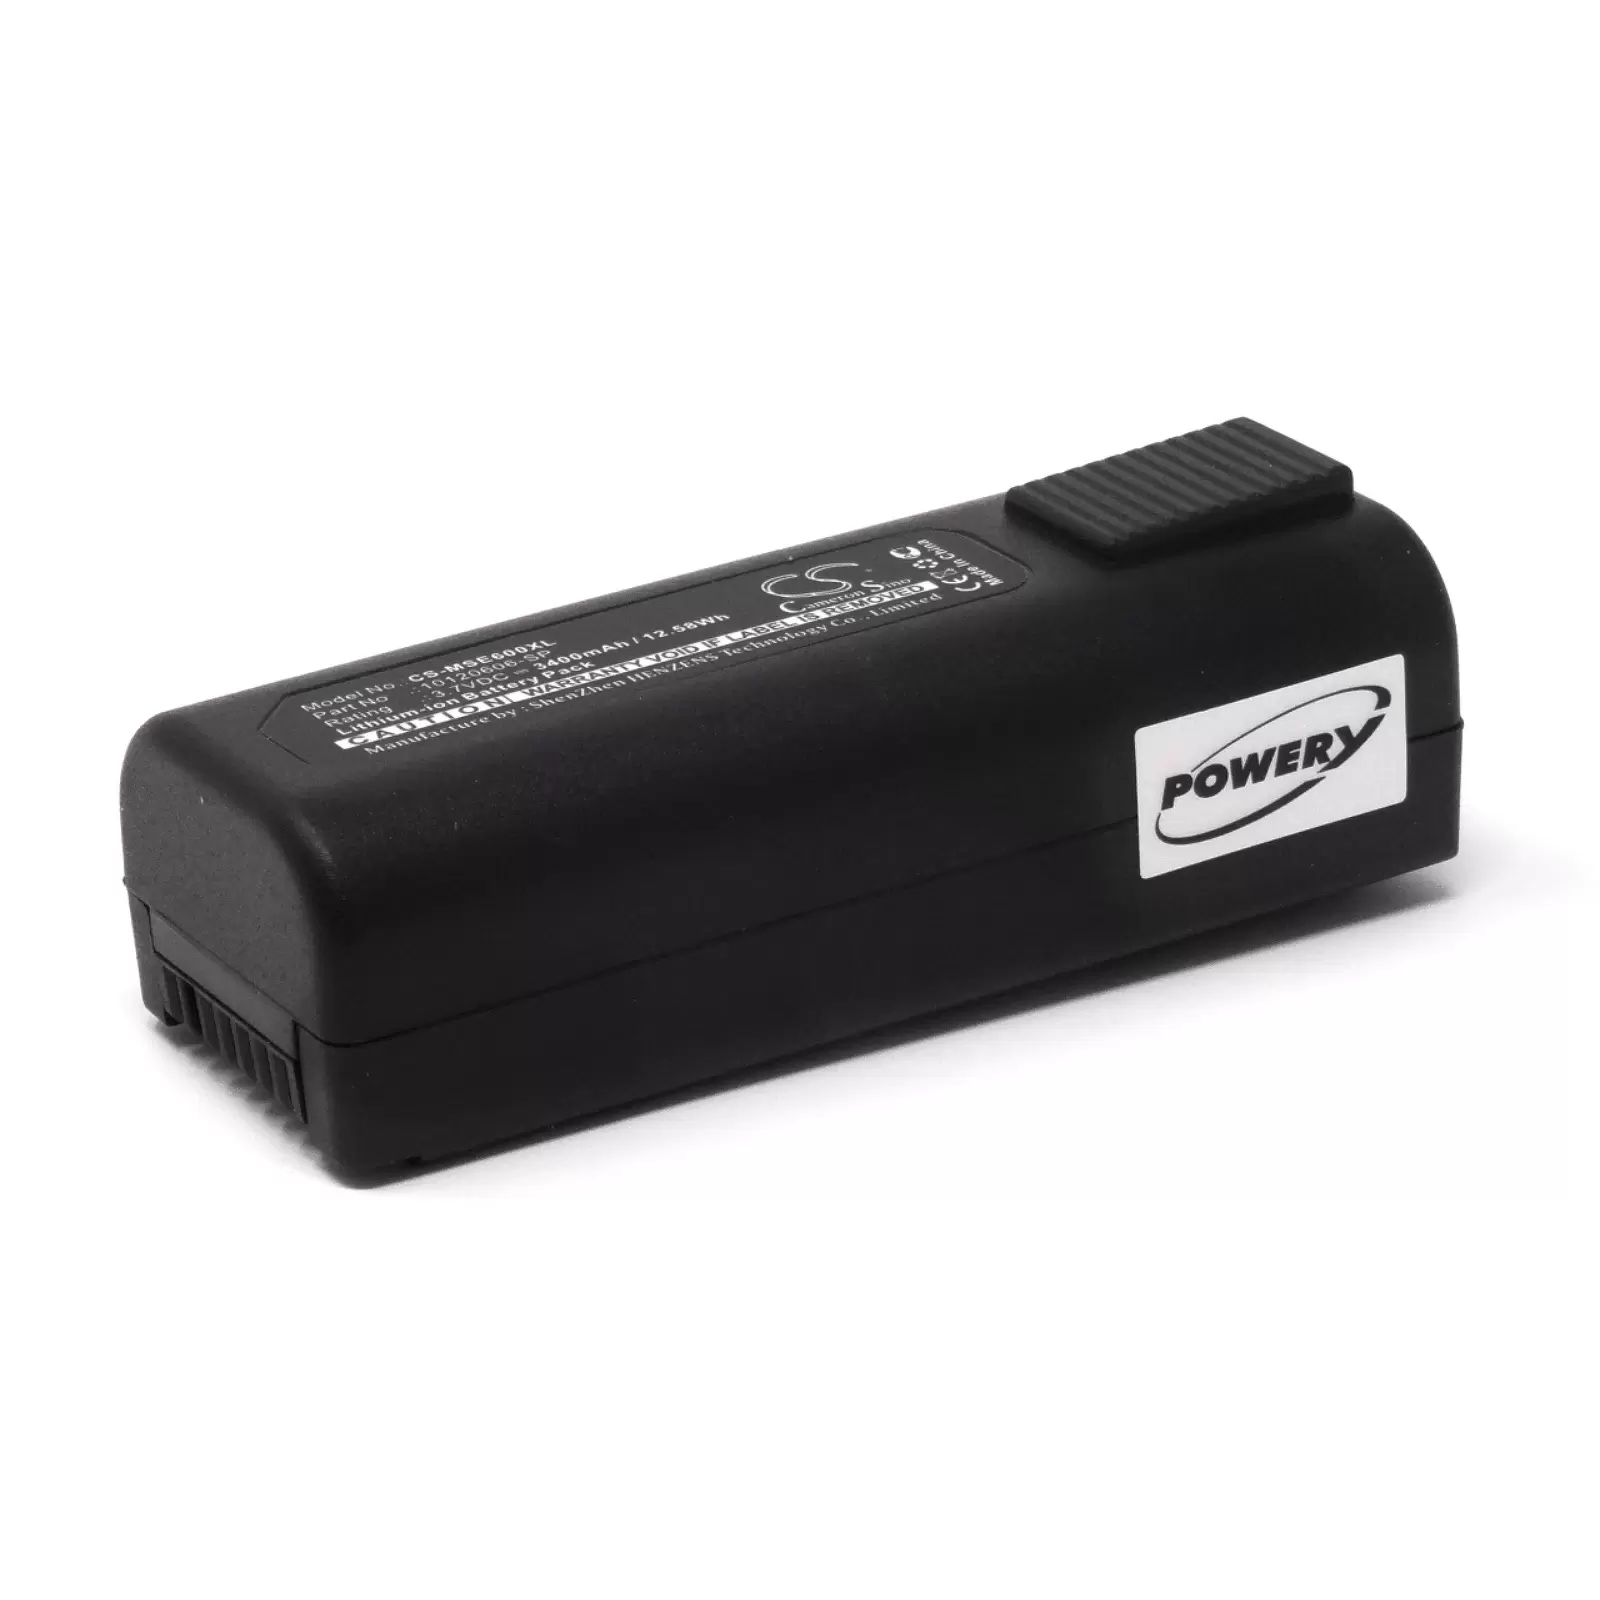 Powerakku für Wärmebildkamera MSA Evolution 6000 TIC / Typ 10120606-SP